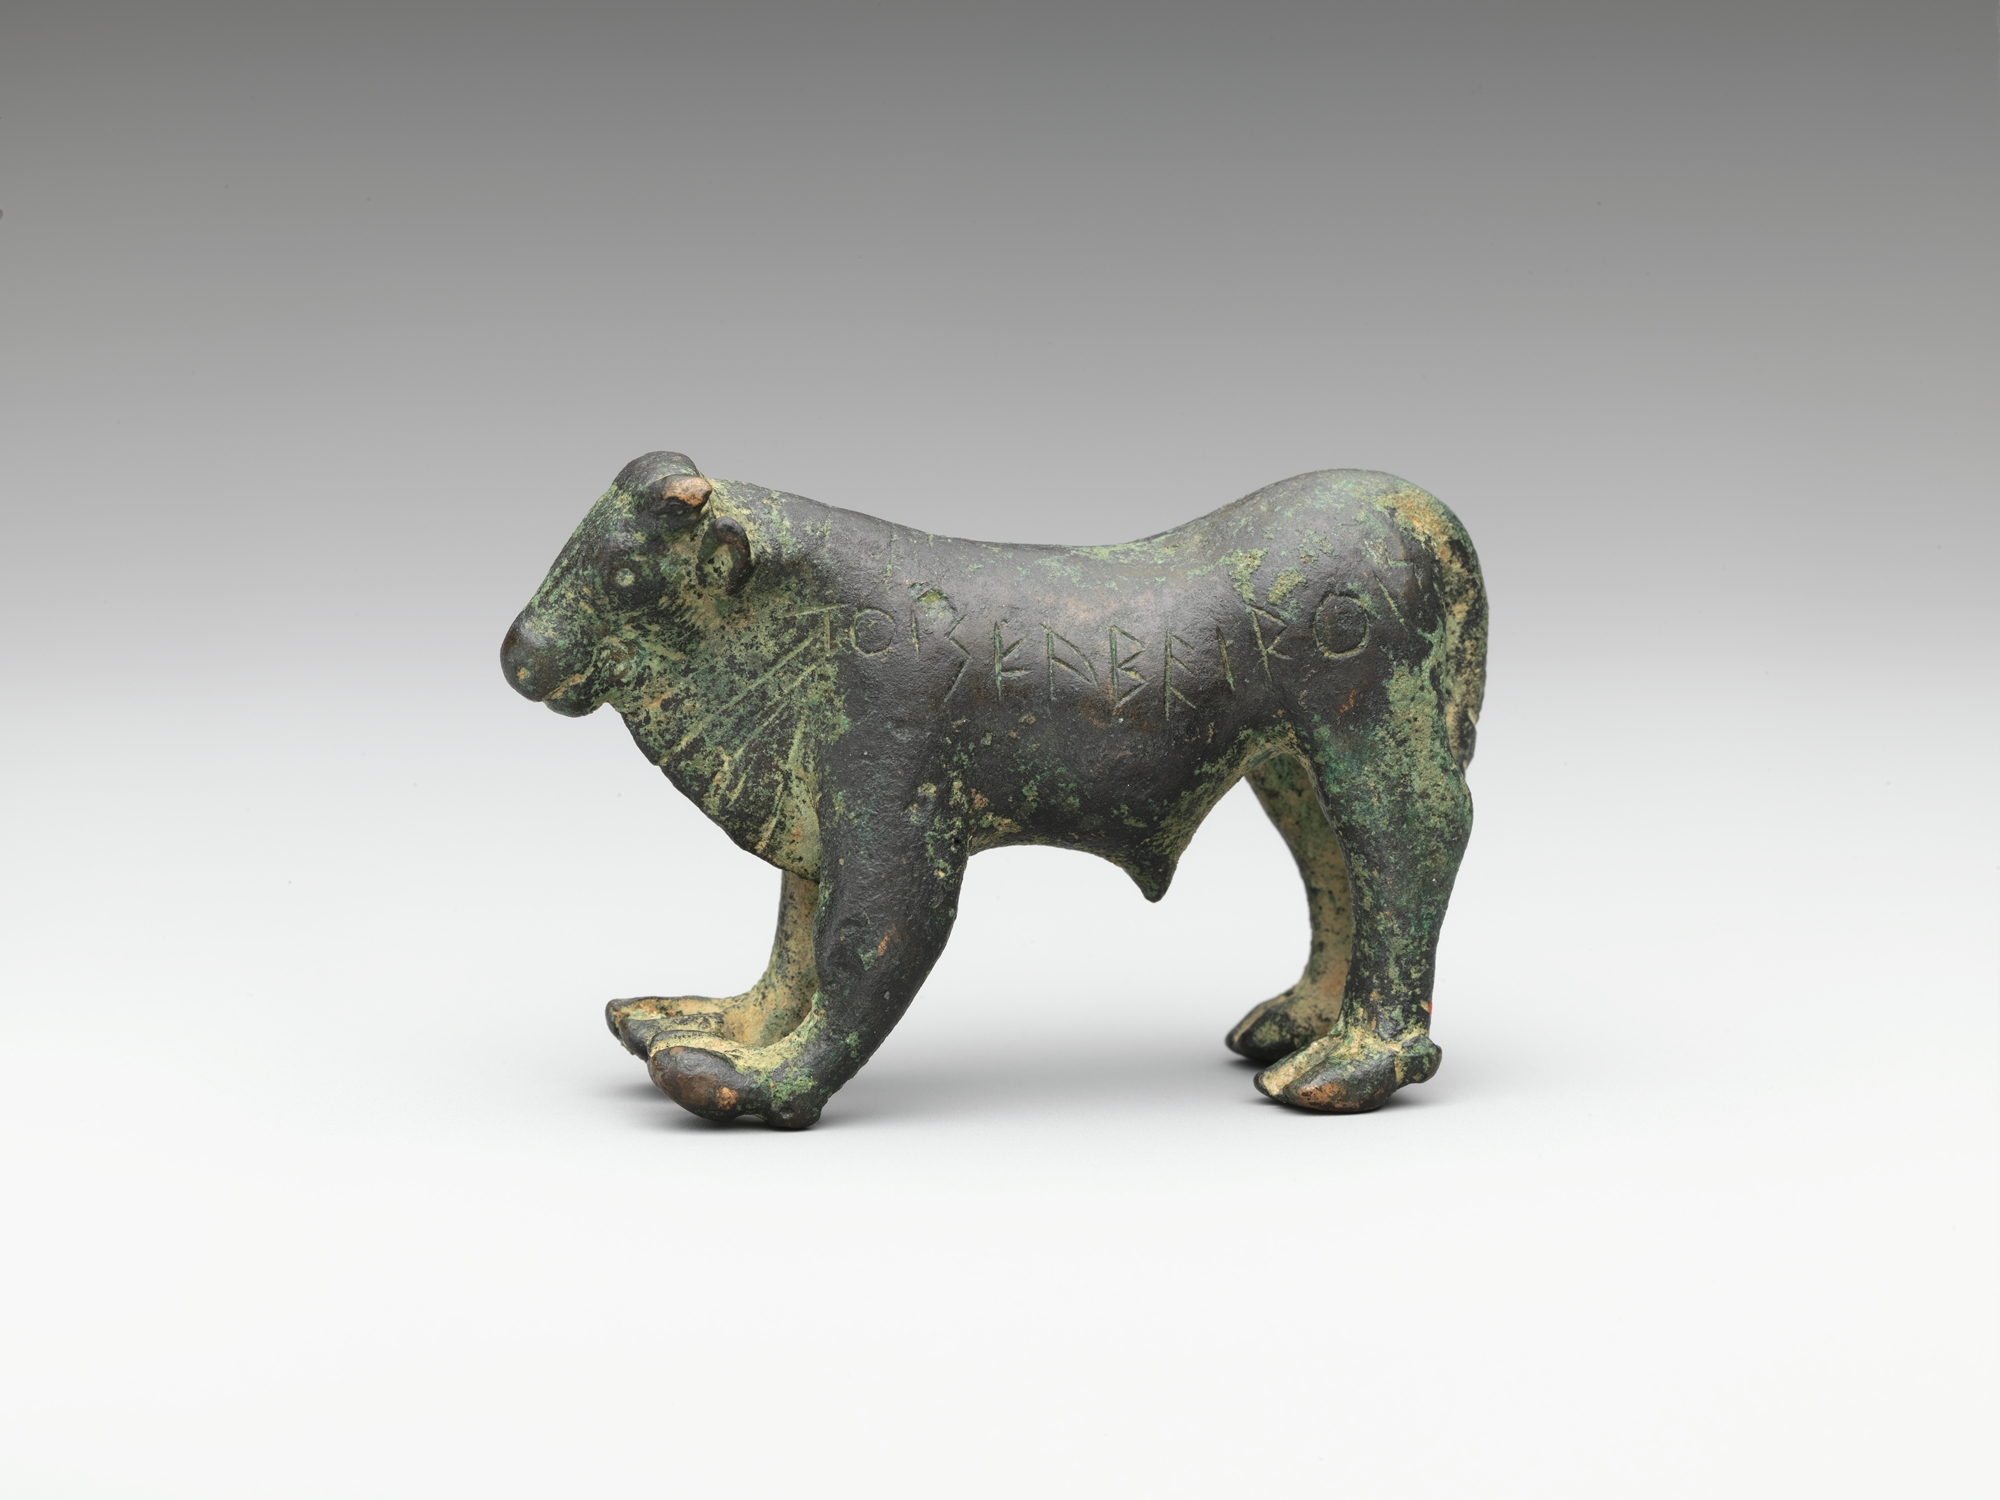 Touro de Bronze by Artista Desconhecido - early 5th century B.C. 